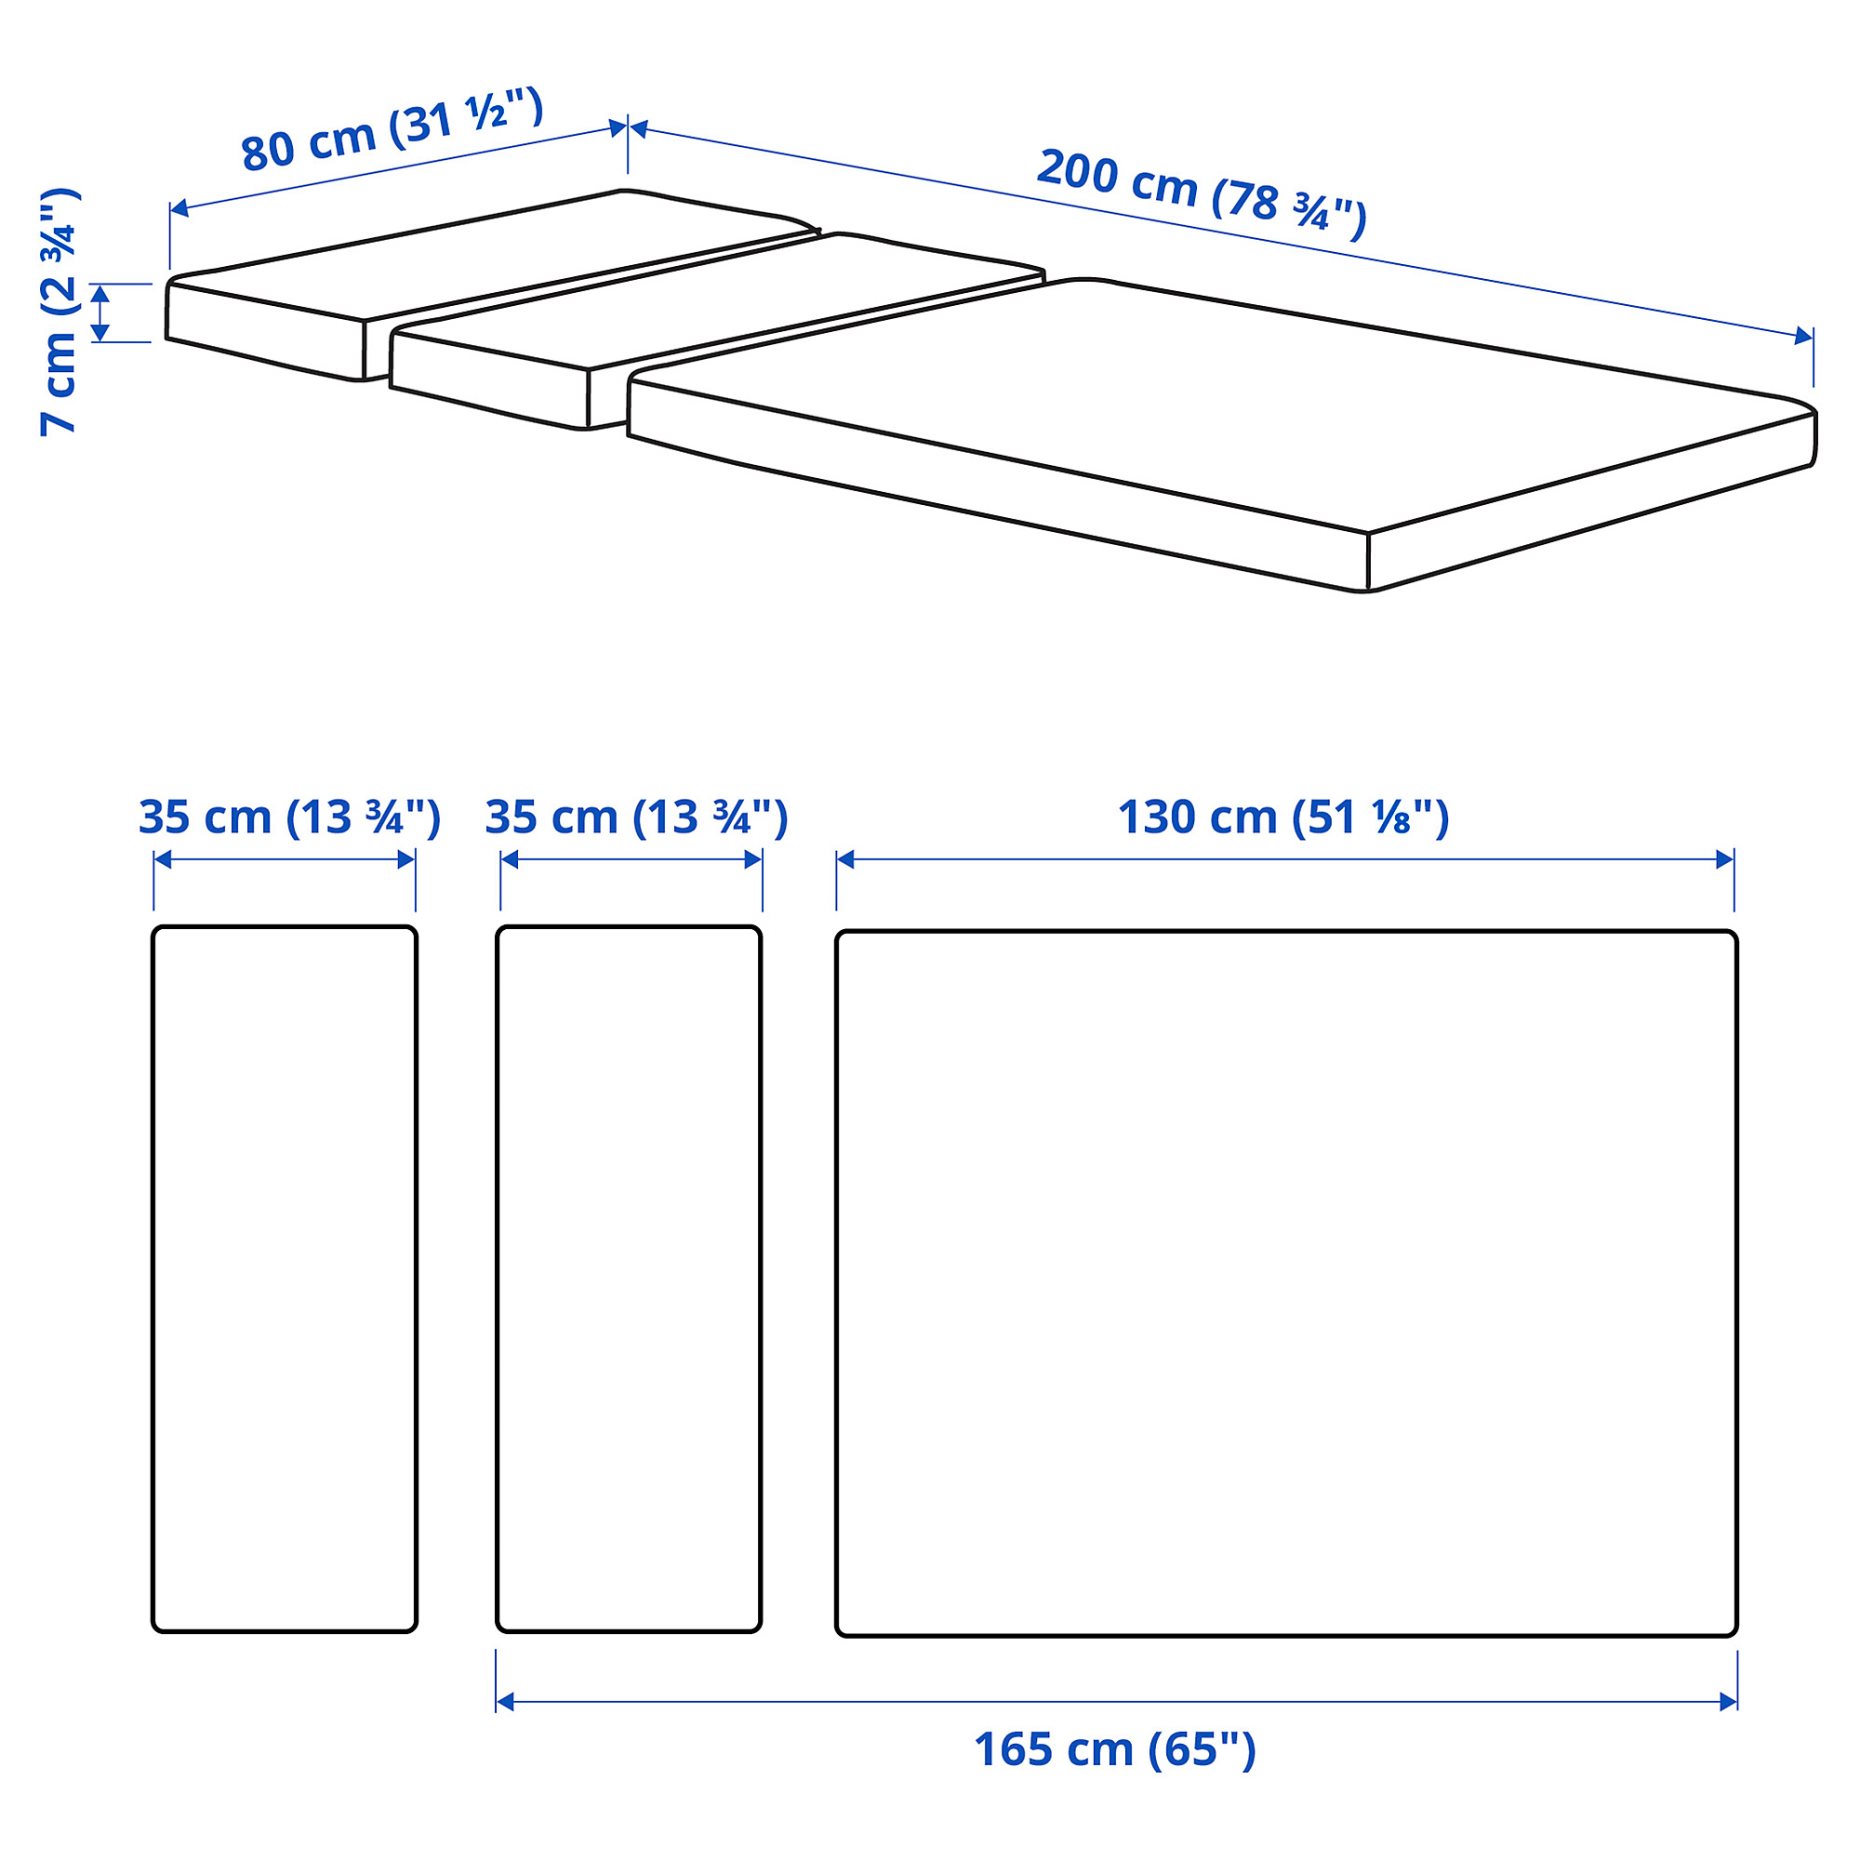 PLUTTEN, foam mattress for extendable bed, 503.393.91